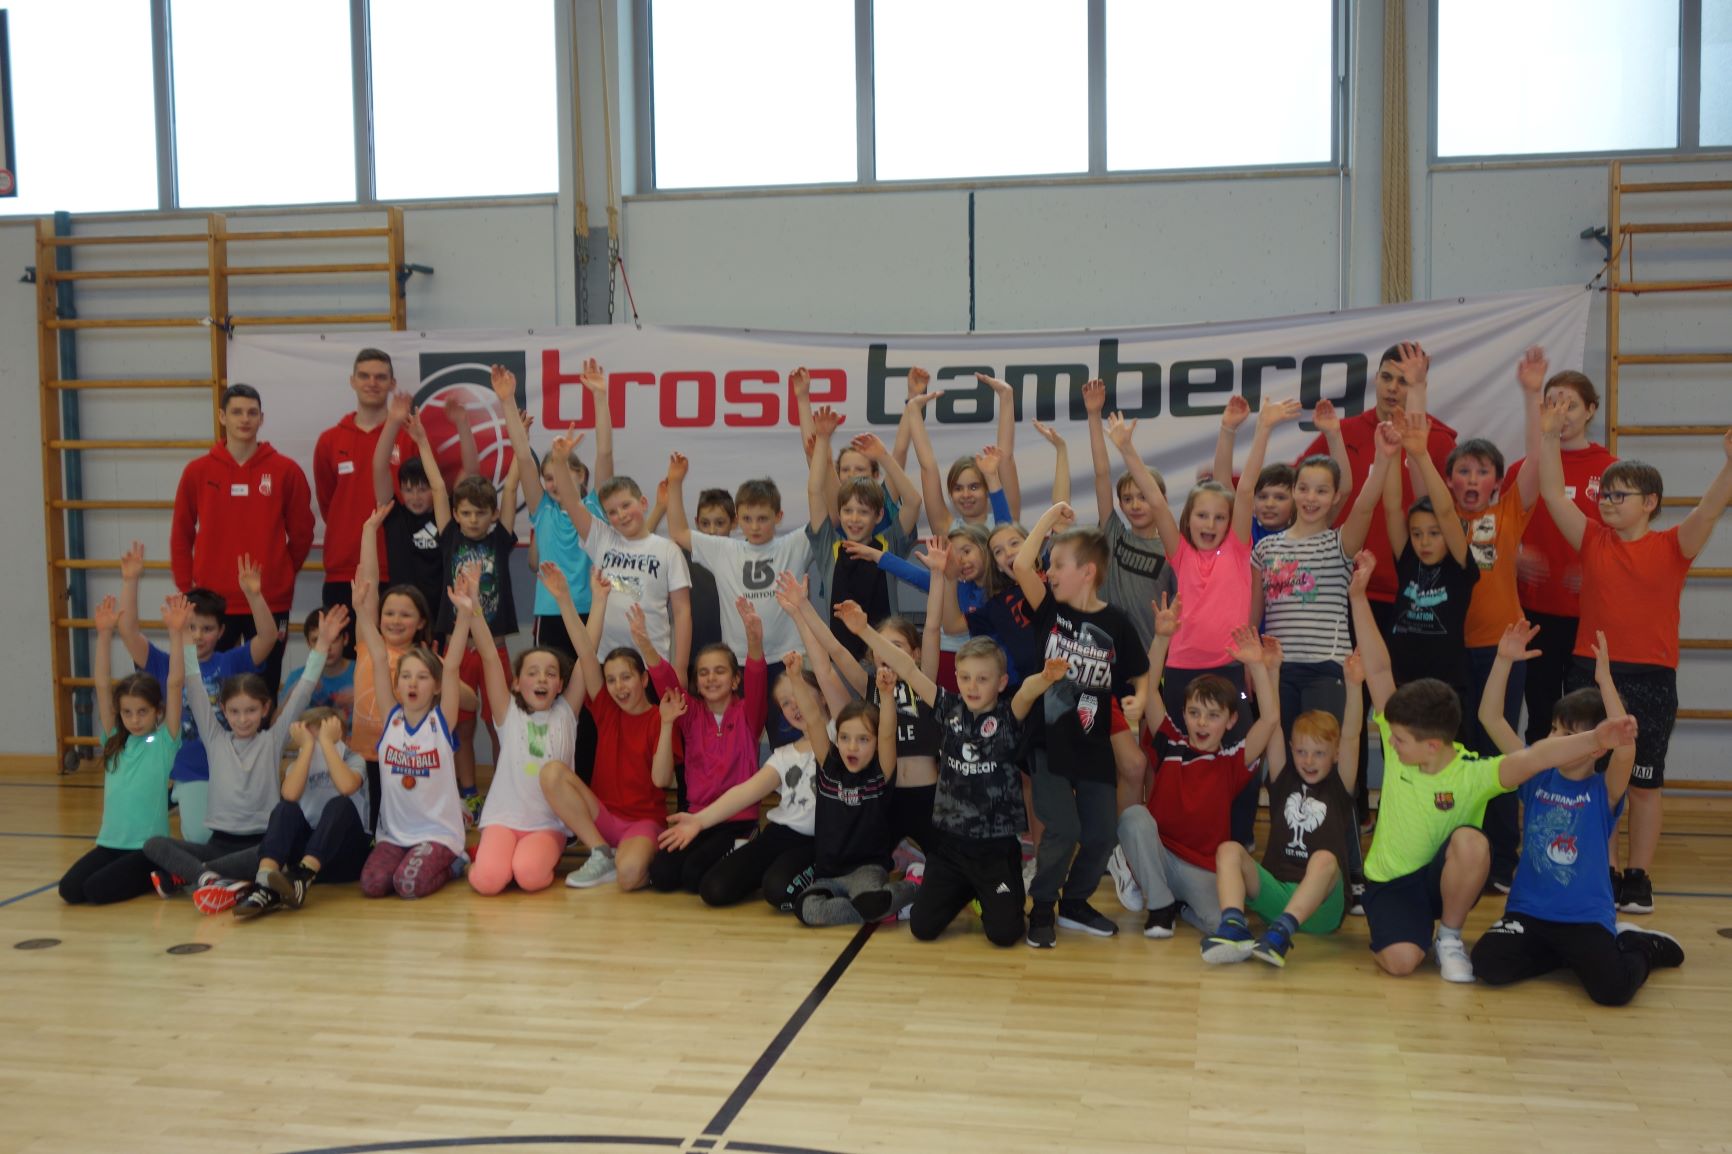 Die Brose Baskets besuchen die Drei-Franken-Schule in Geiselwind